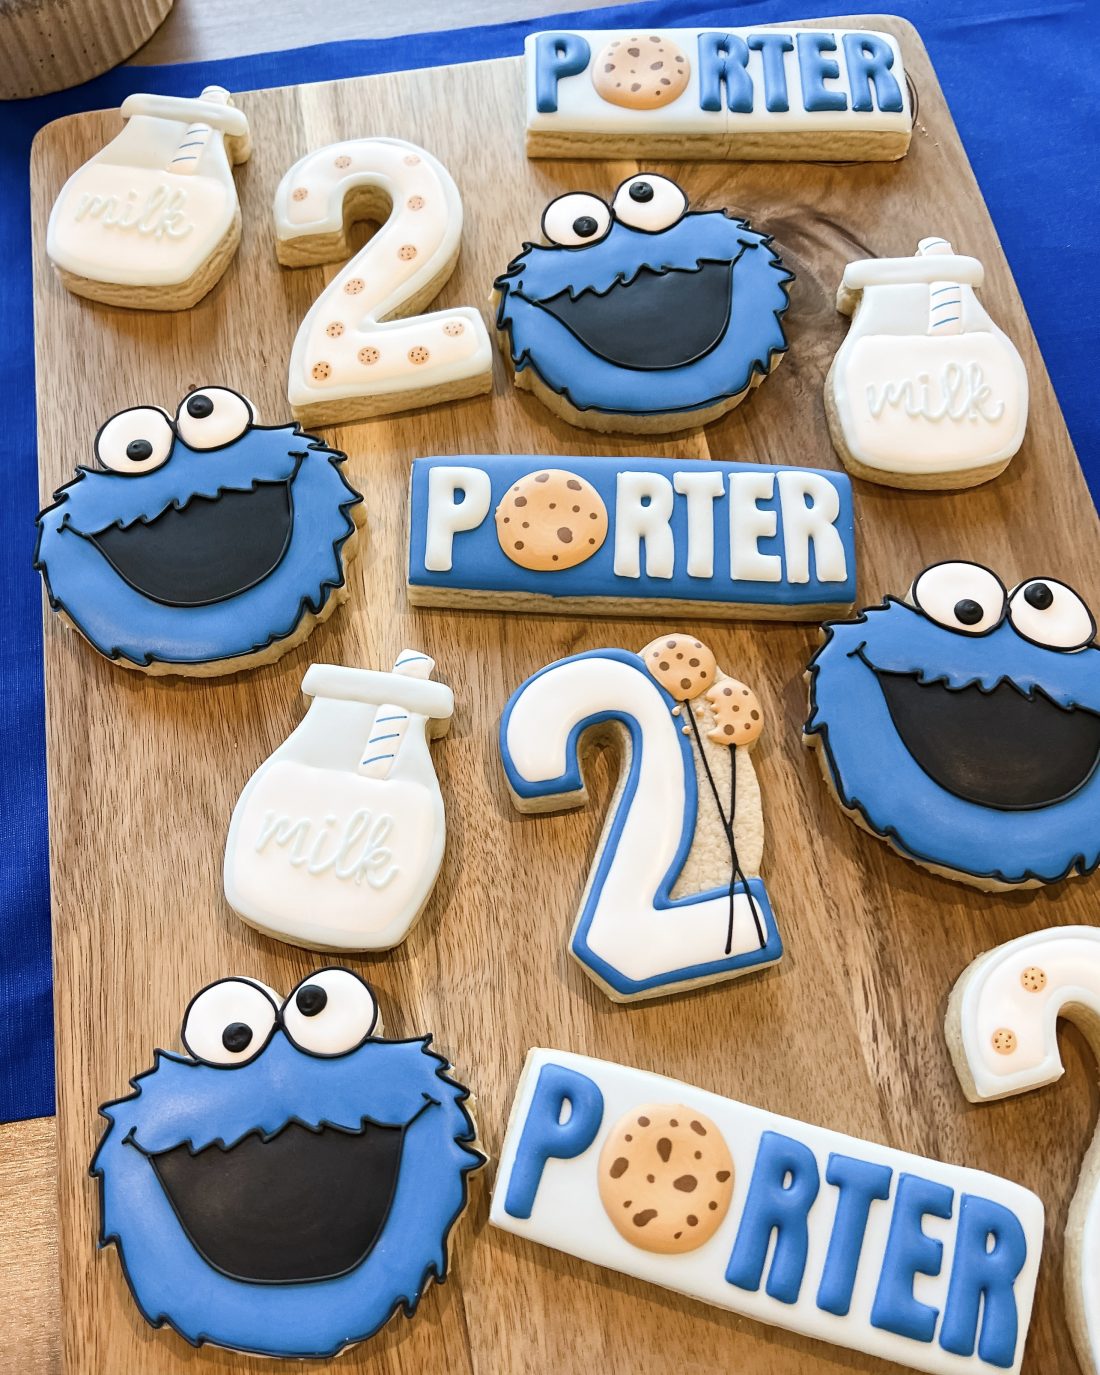 Cookie Monster sugar cookies, Cookie Monster birthday party